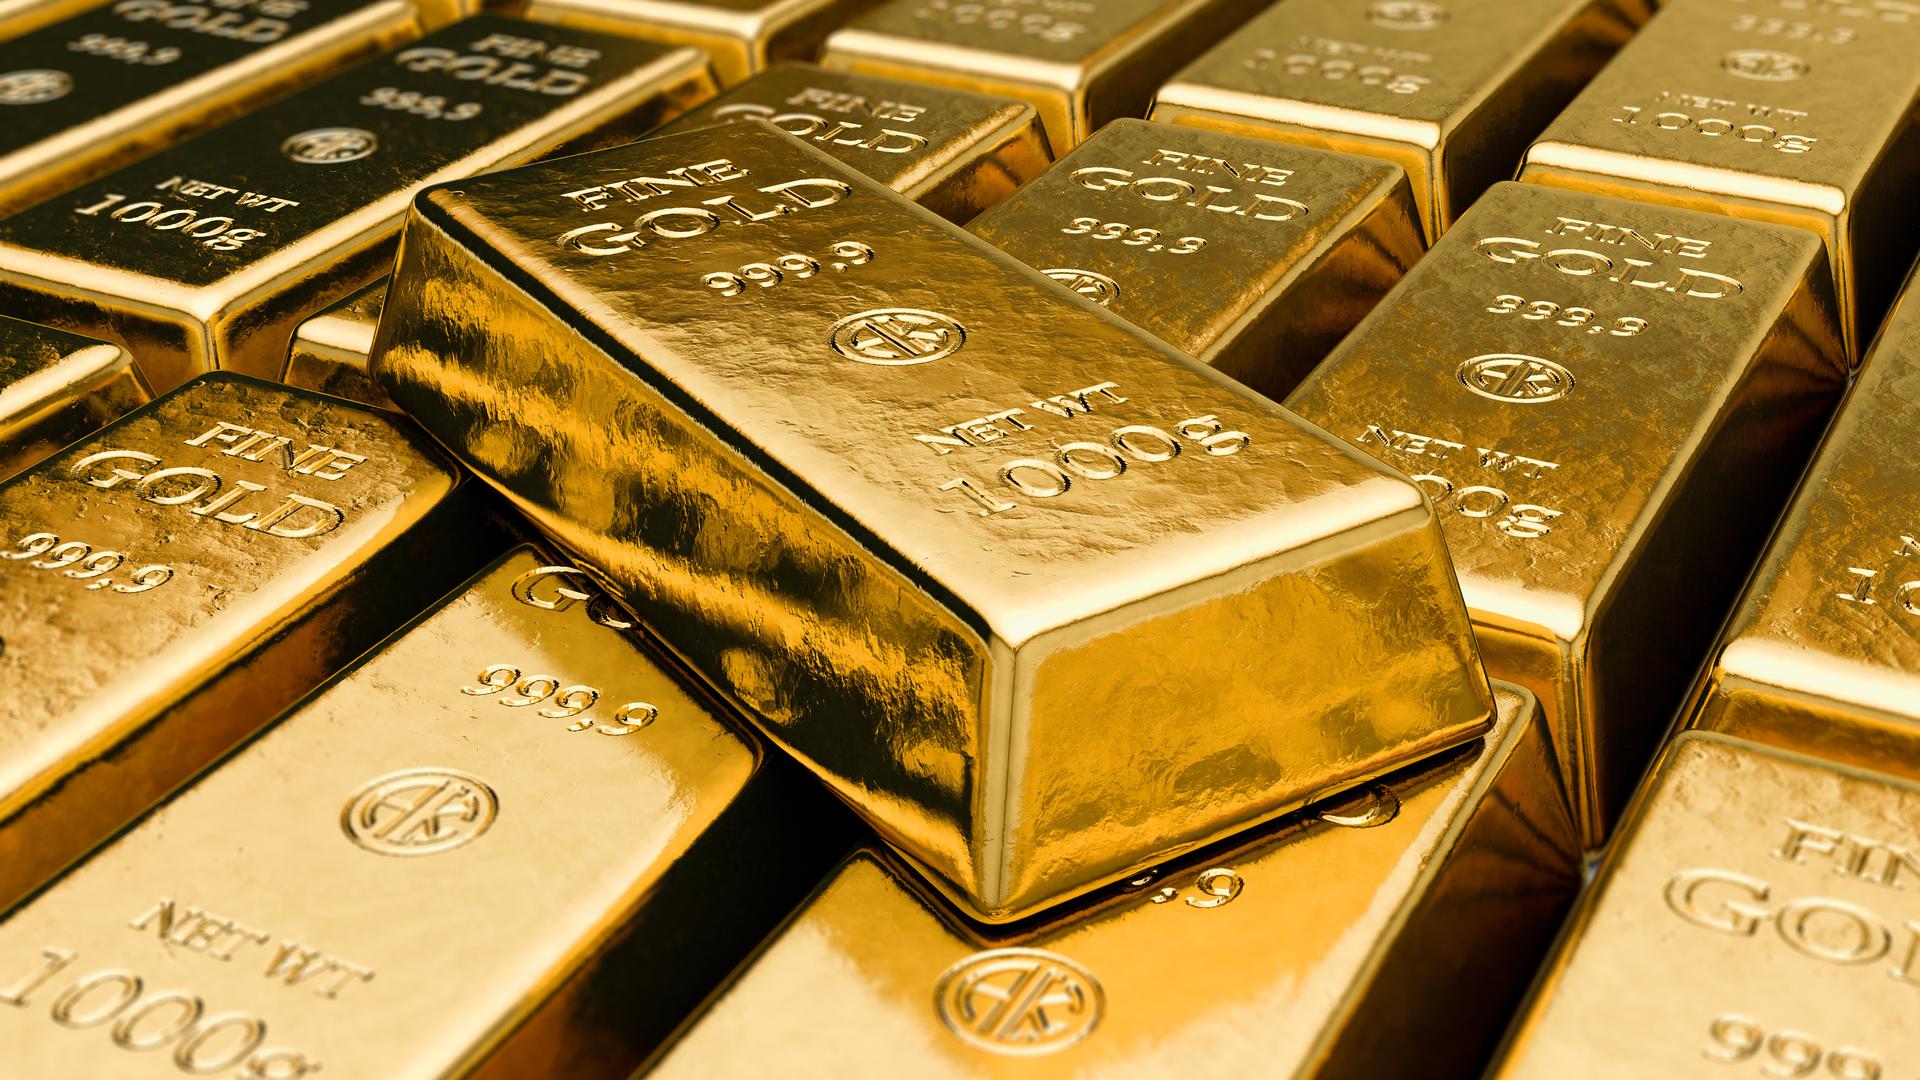 Durch die Geschichte mit Wirtschaftskrisen und Kriegen hat Gold stets seinen Wert behalten. Wer eine sichere Anlage sucht, sollte sich am besten von erfahrenen Experten rund um das Edelmetall beraten lassen.